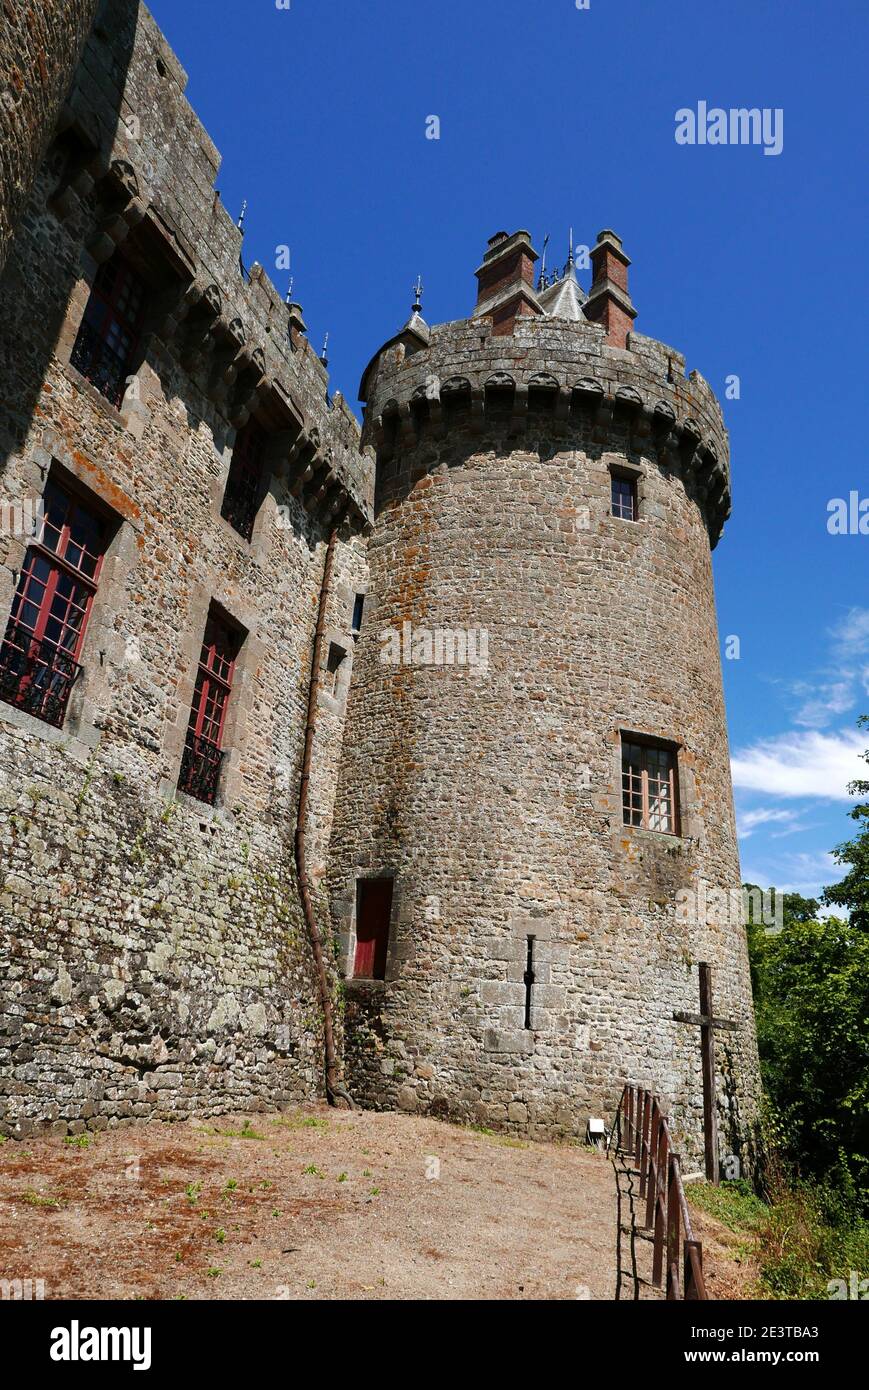 Combourg castle, Combourg, Ille-et-Vilaine, Bretagne, Brittany, France, Europe Stock Photo